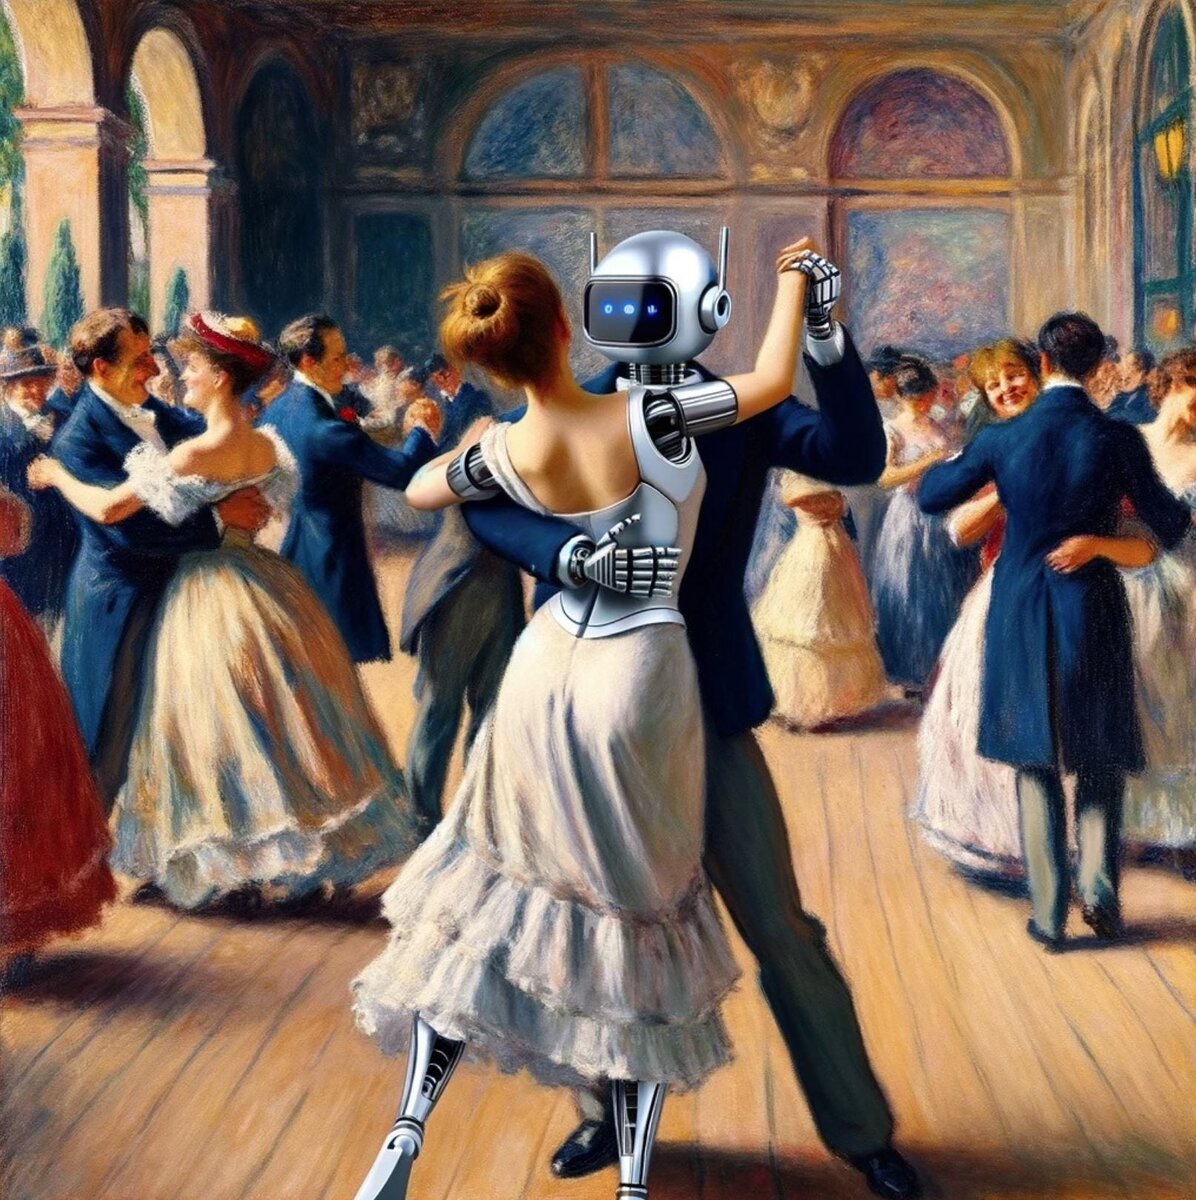 Картина GPT-4 по мотивам работы Пьера Огюста Ренуара “Танец в Буживале”. Действие происходит в гибридном обществе людей и андроидов.